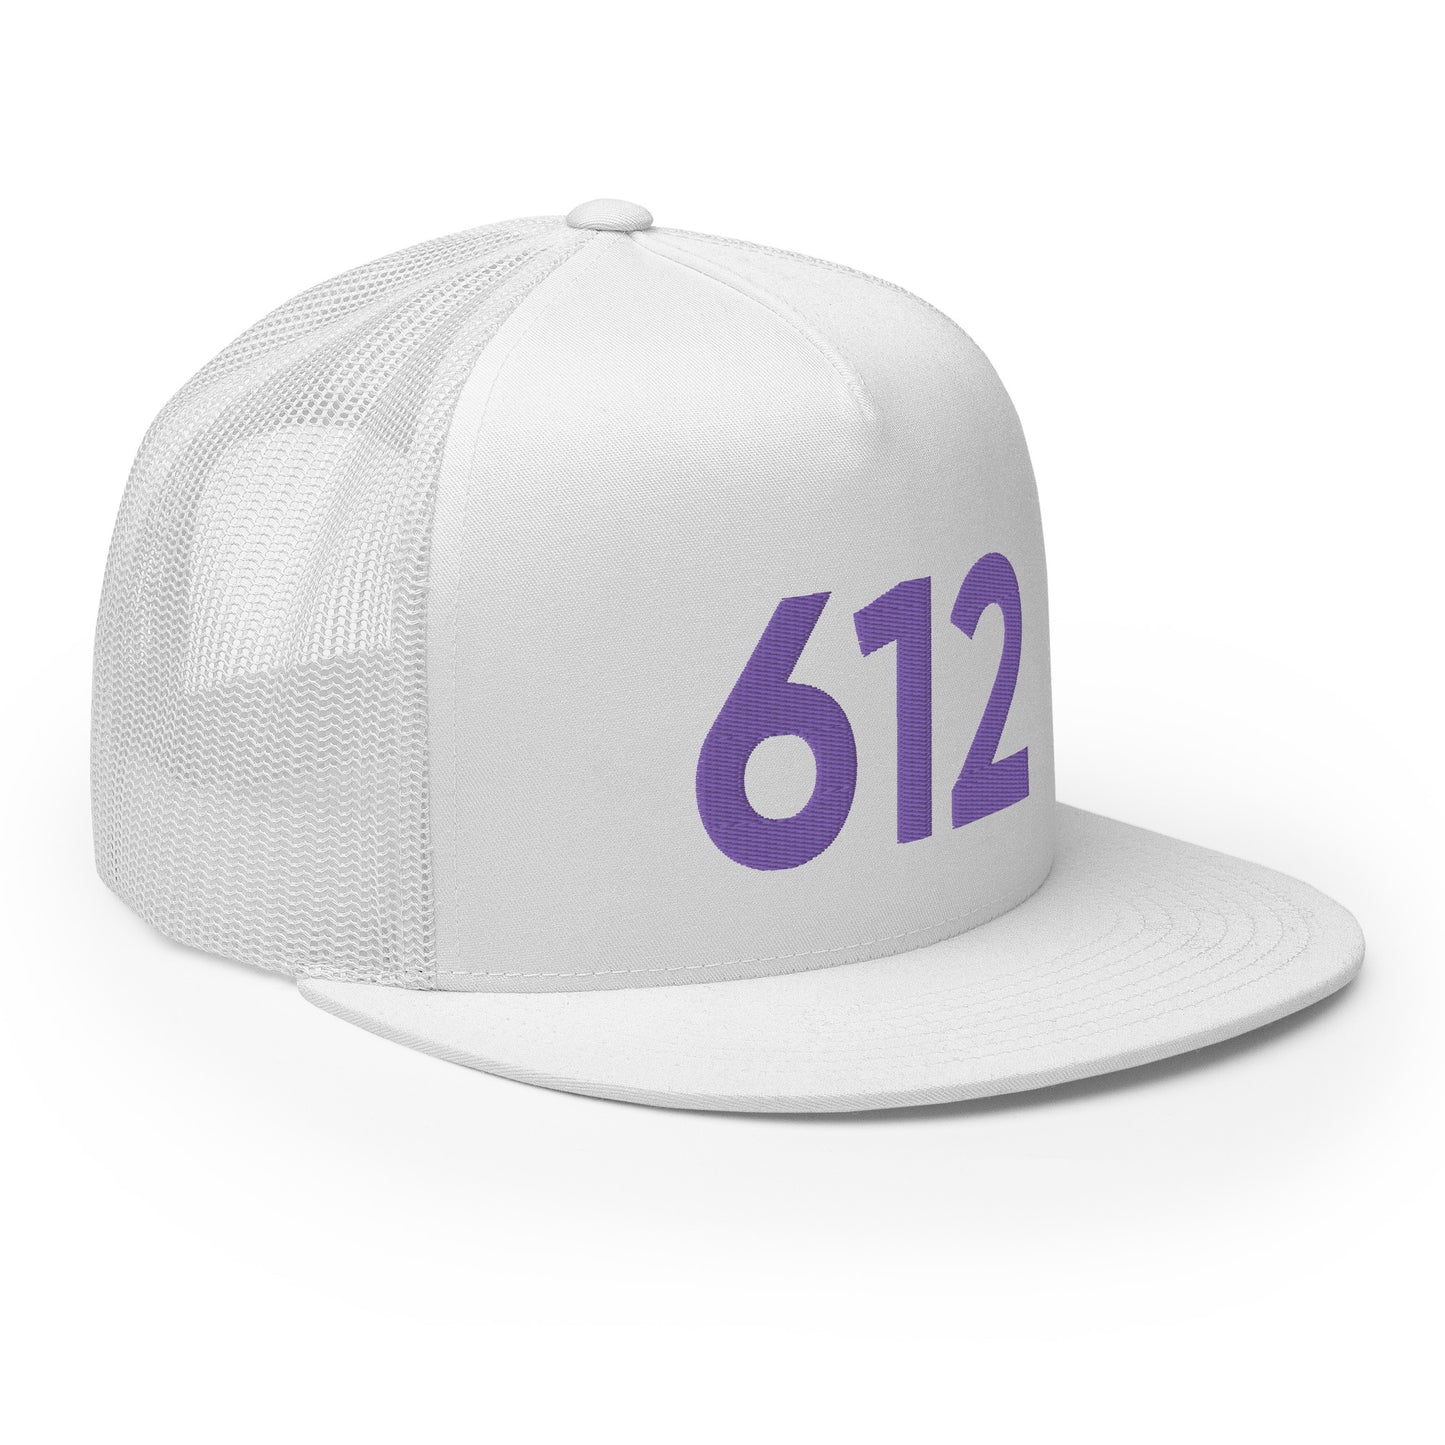 612 Minneapolis Faithful Trucker Hat